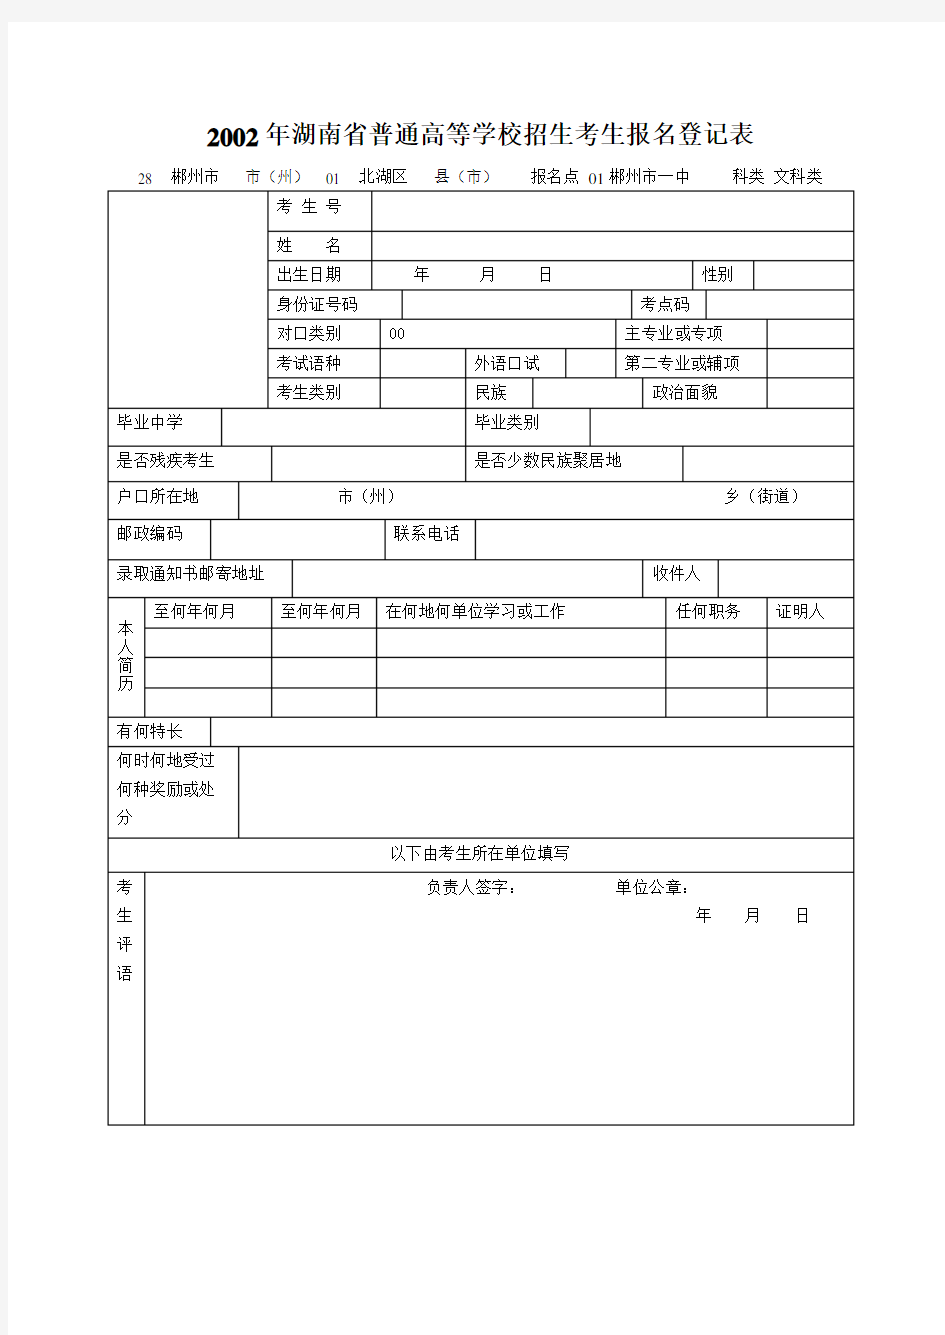 完整版湖南省普通高等学校招生考生报名登记表